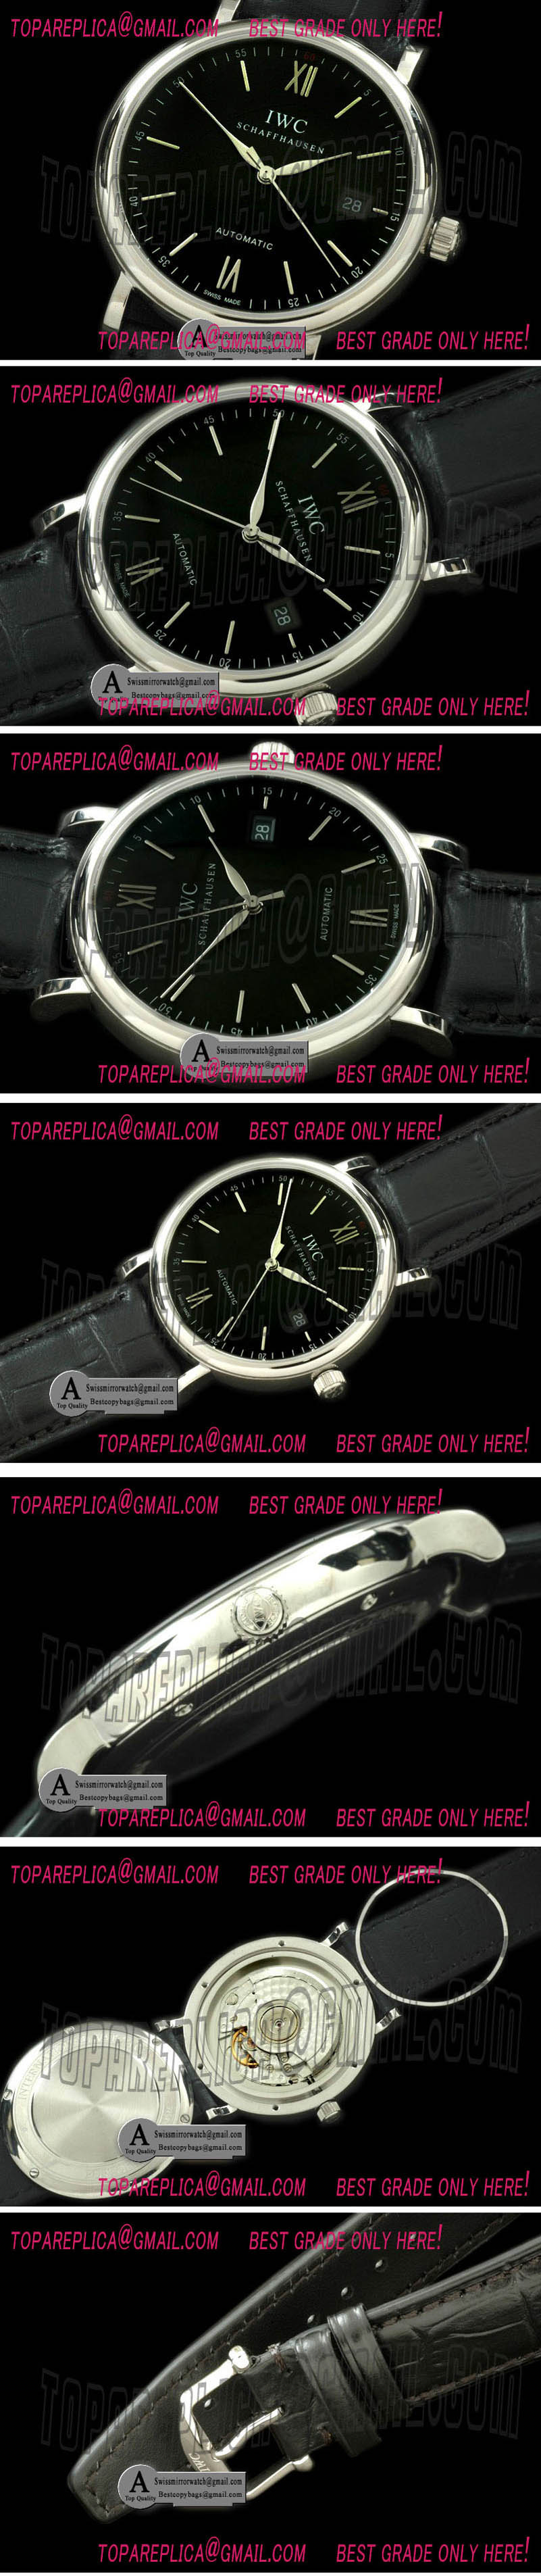 IWC Portofino Automatic SS Leather Black Asia 2892 Replica Watches